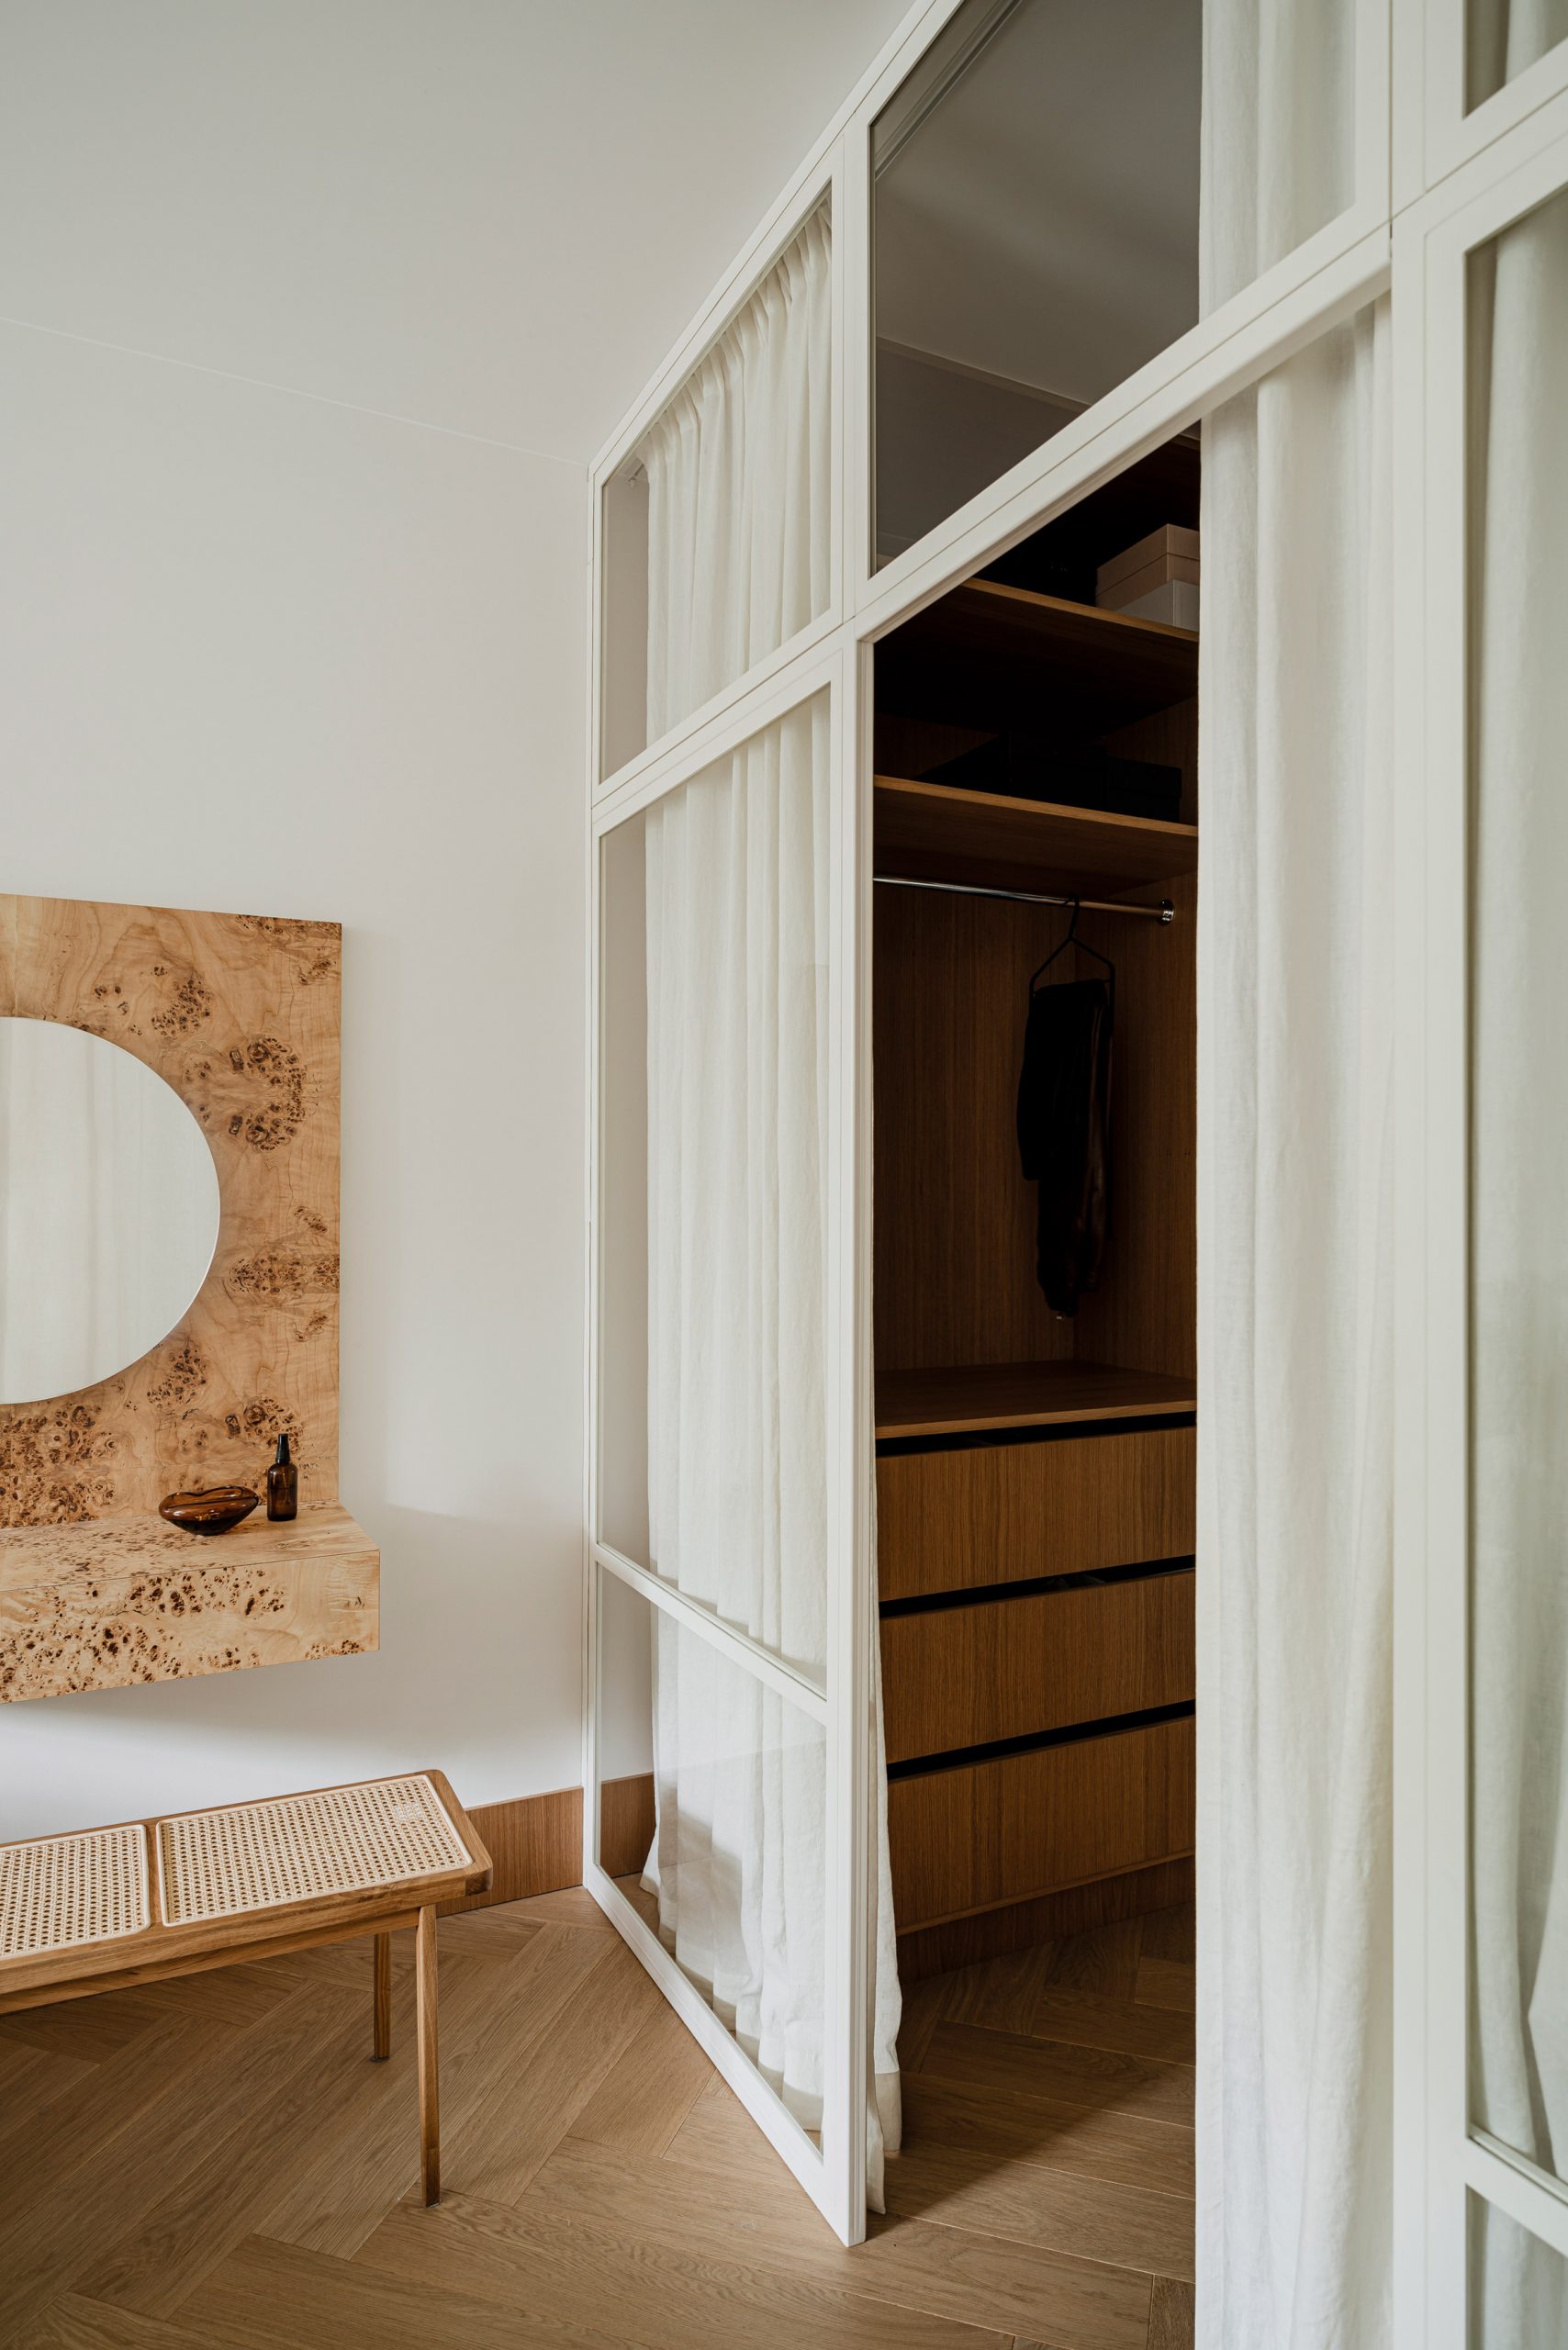 NTK Agnieszka Owsiany đã thiết kế căn hộ yên tĩnh, nhẹ nhàng cho cặp vợ chồng son với nội thất hầu như toàn bằng gỗ. Phòng ngủ được phân vùng bằng cửa kính chiều cao kịch trần, khung sơn trắng, tích hợp rèm che đồng màu để tạo sự riêng tư.